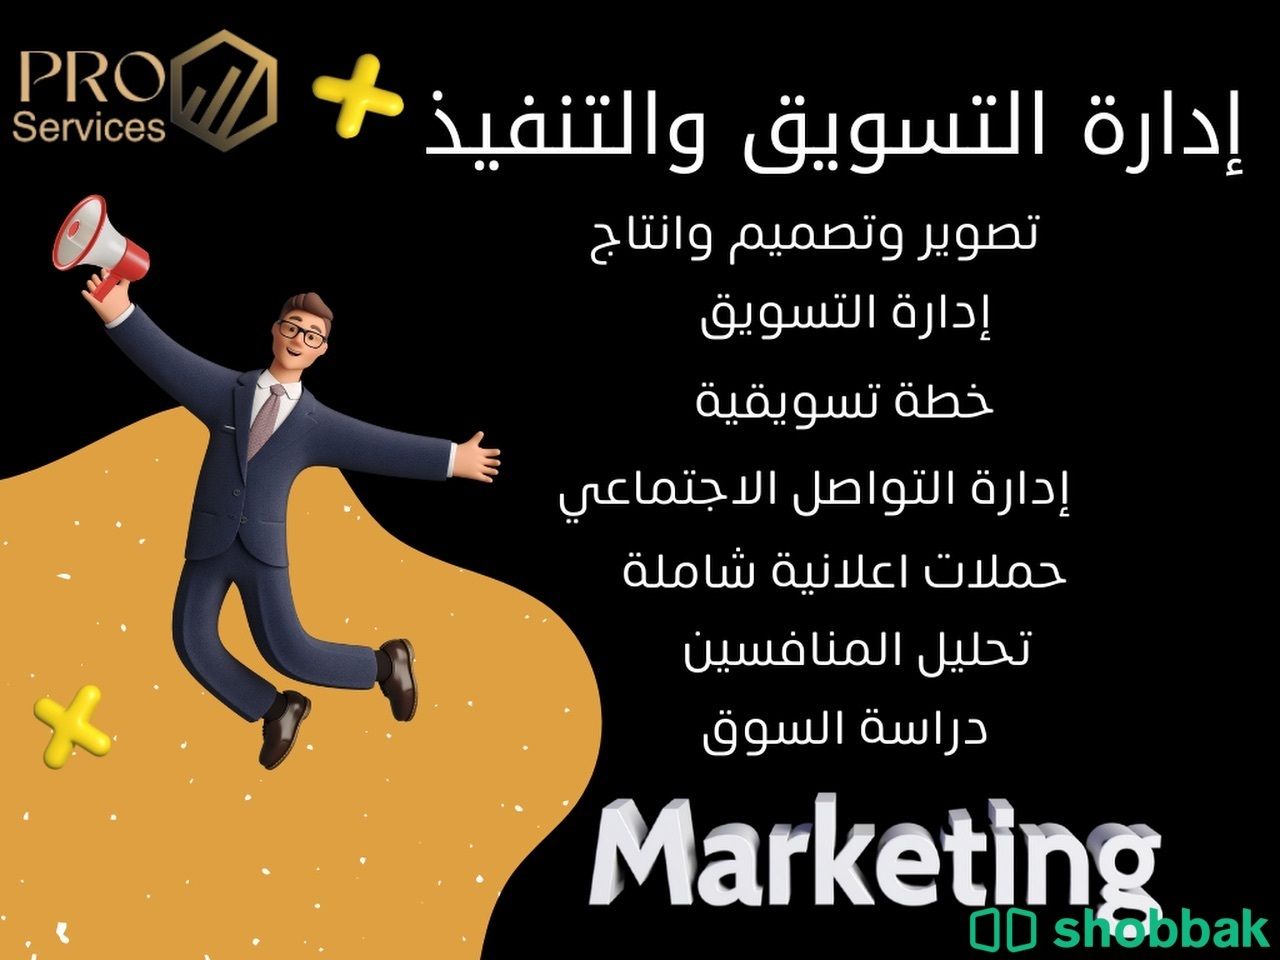 انشاء حملات اعلانيه . تسويق الكتروني . اعلان . تصميم متاجر الالكترونية  Shobbak Saudi Arabia